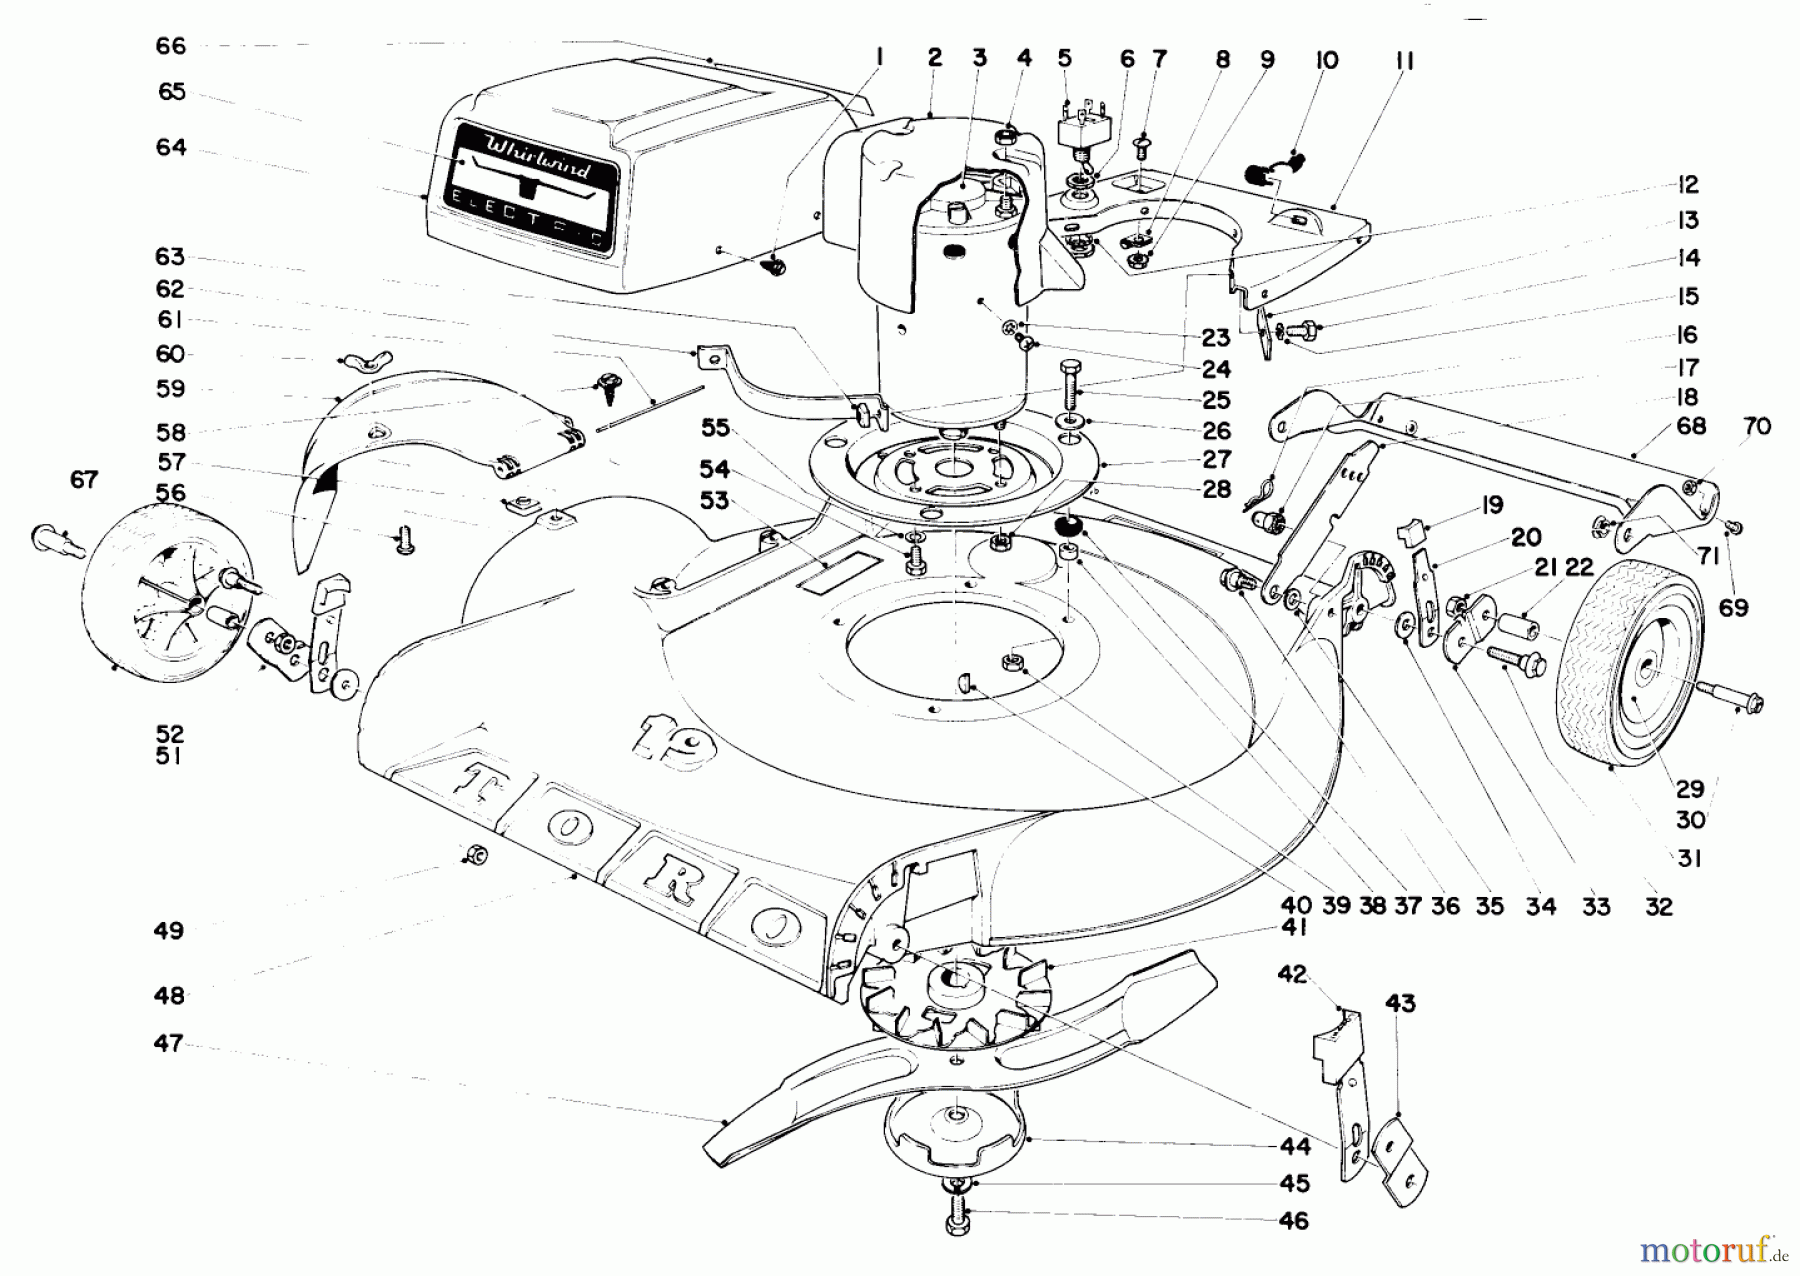  Toro Neu Mowers, Electric 18300 - Toro Electric Whirlwind Lawnmower, 1968 (8000001-8999999) 19